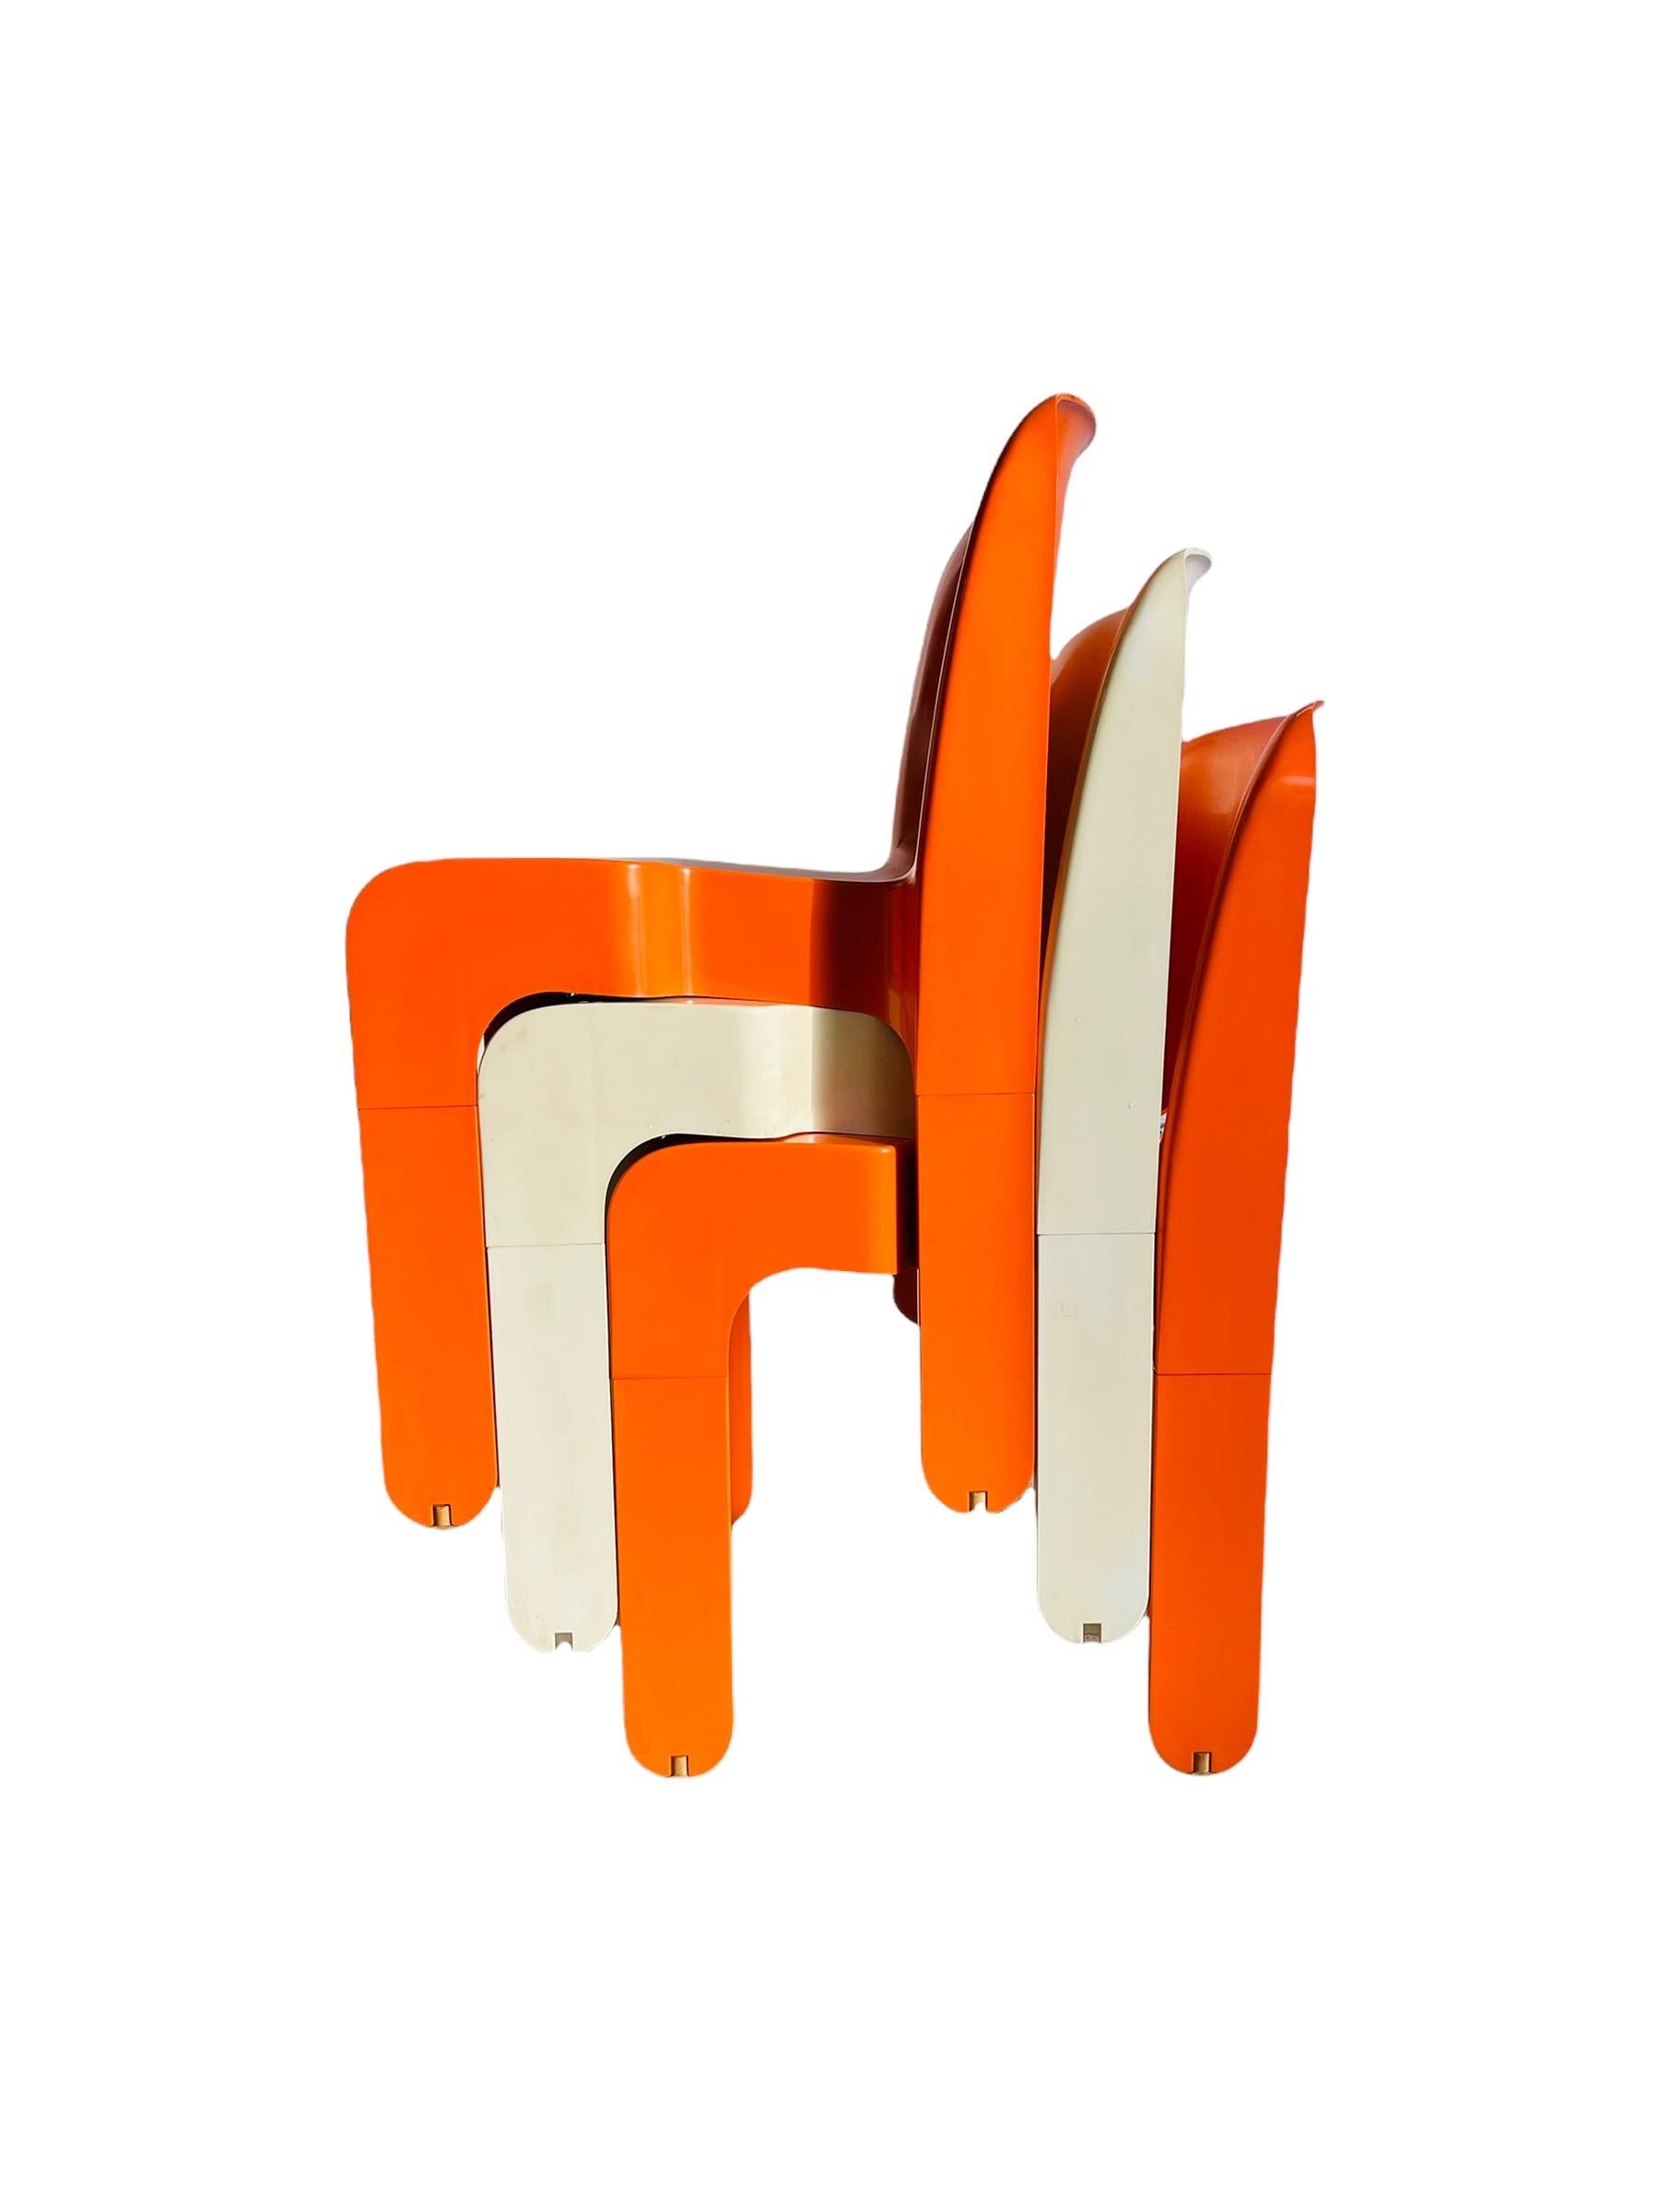 Ensemble de 3 chaises empilables iconiques et colorées de l'ère spatiale, conçues par Joe Colombo pour Kartell vers 1967. Ces chaises élégantes sont empilables et constitueraient une belle addition à n'importe quelle pièce ou table. Les œuvres de